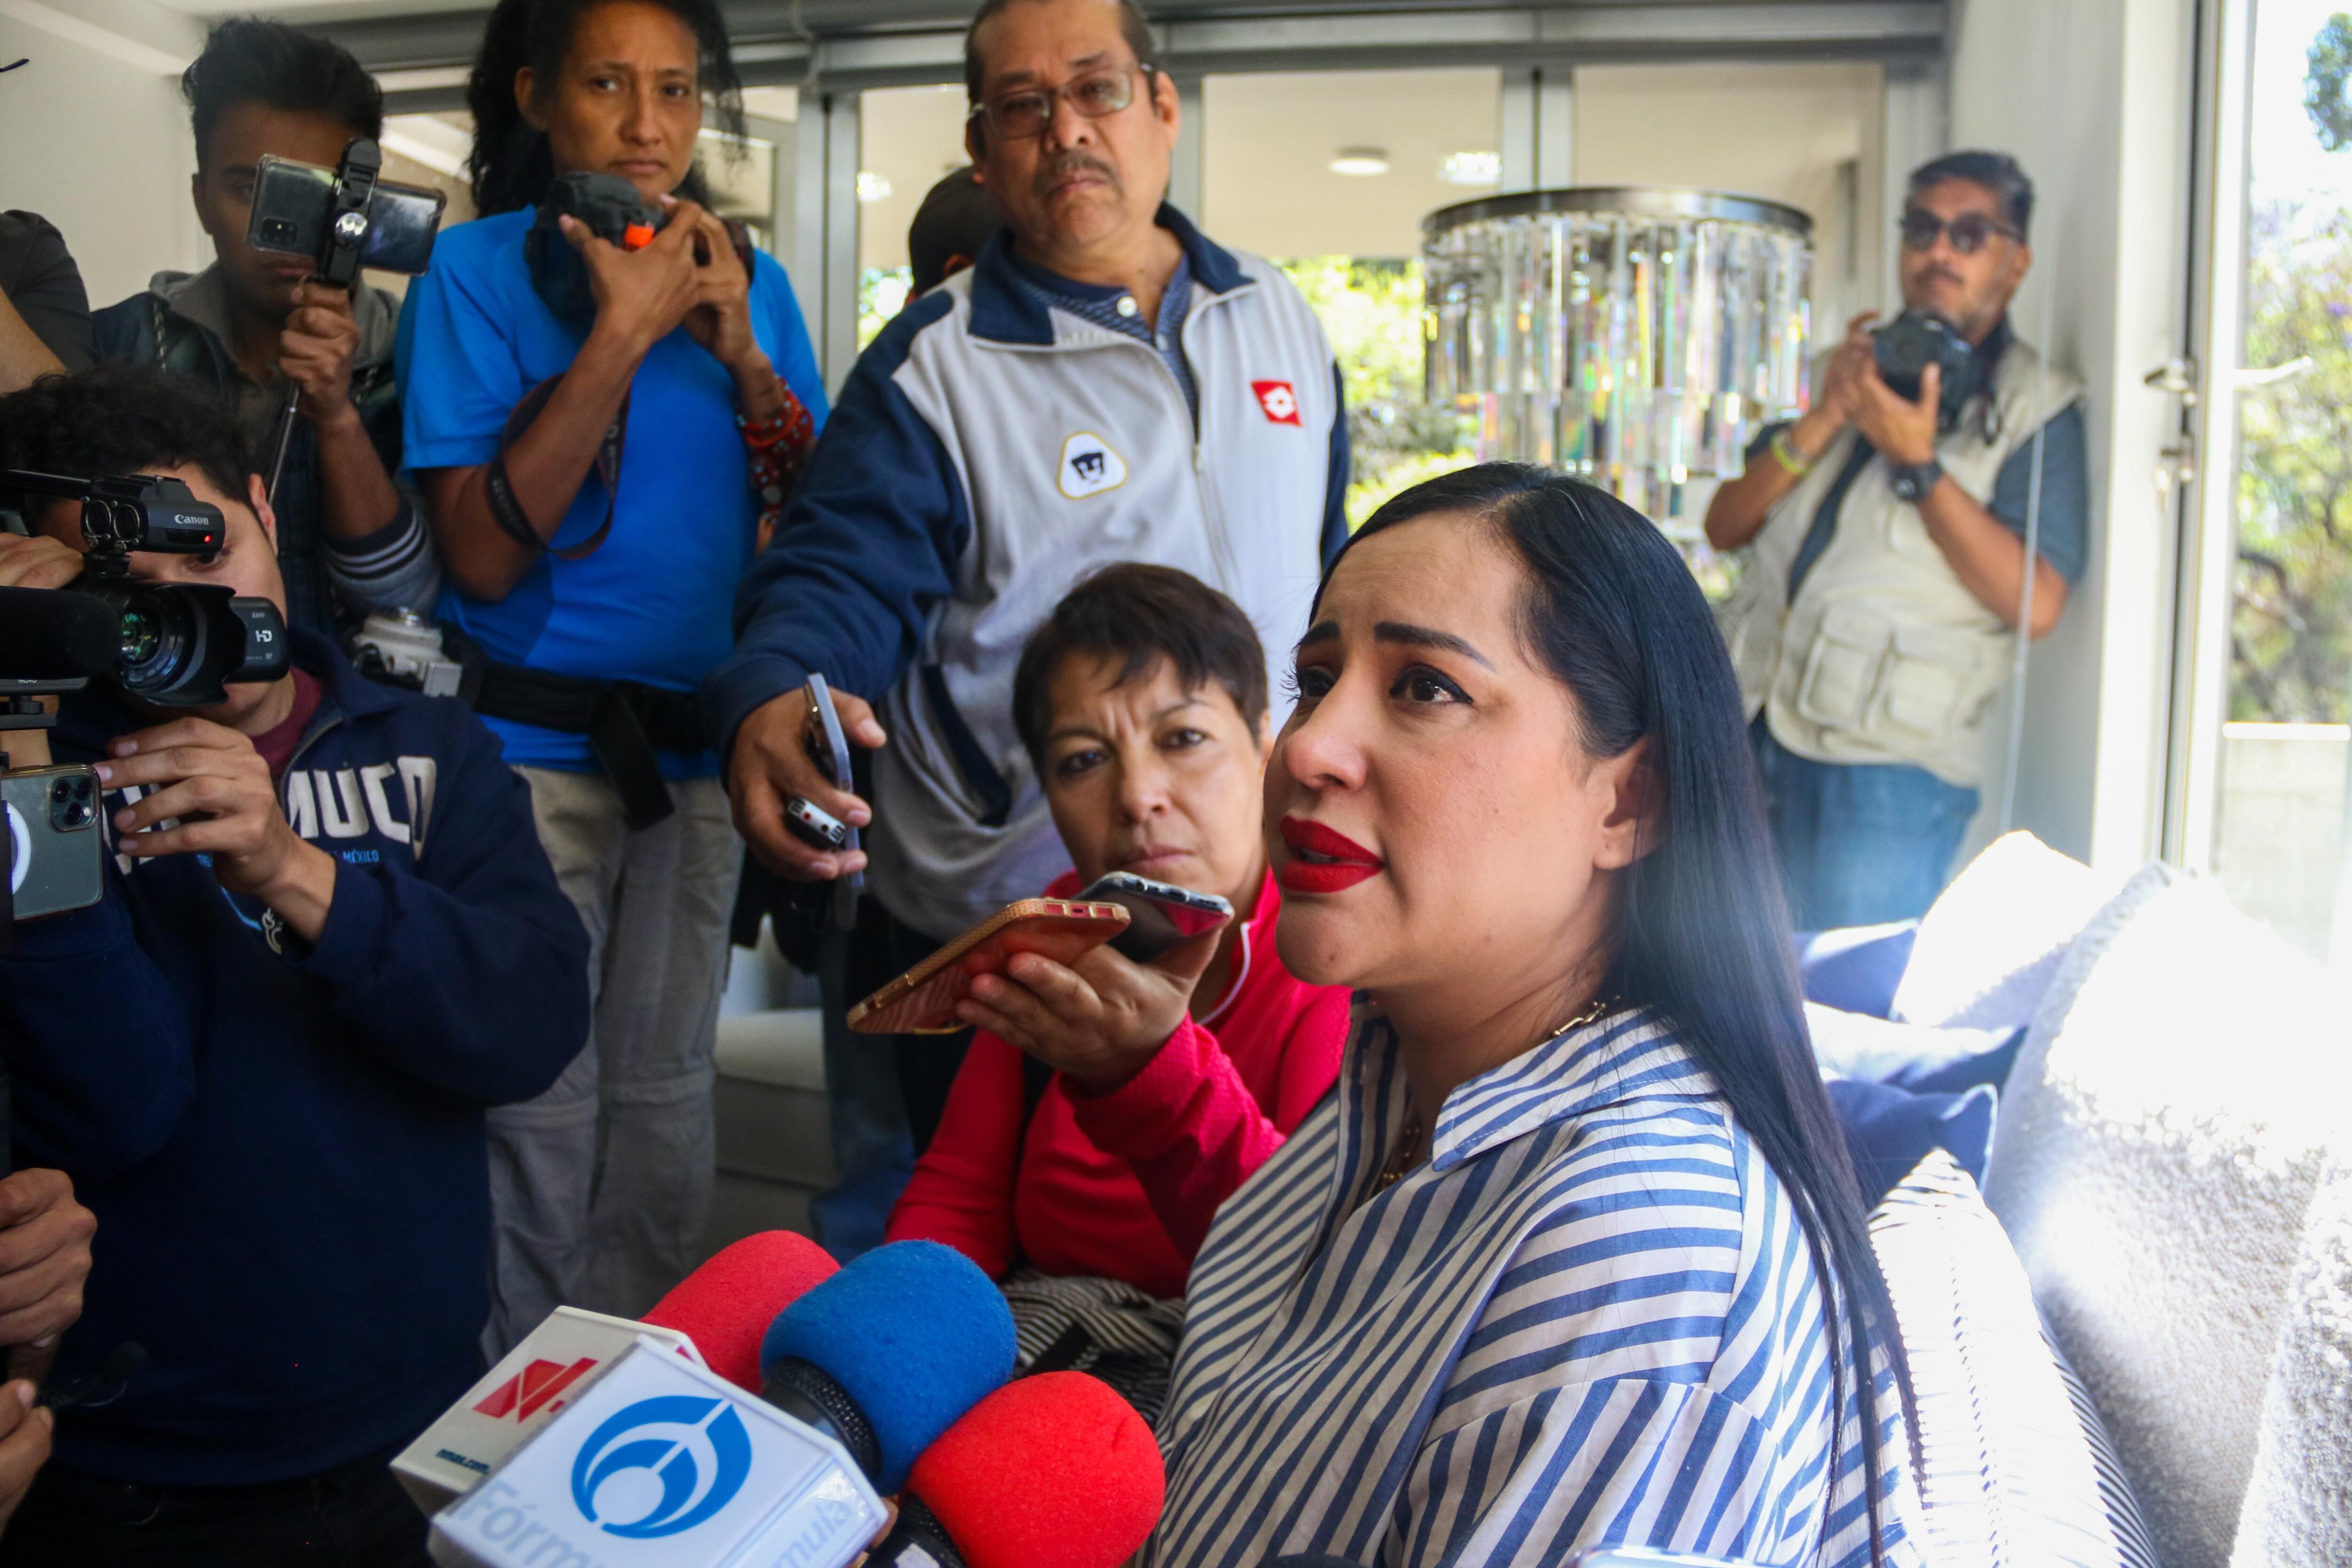  La mandataria de la Cuauhtémoc, Sandra Cuevas, ofreció una conferencia de prensa en su domicilio particular para hablar del tema.